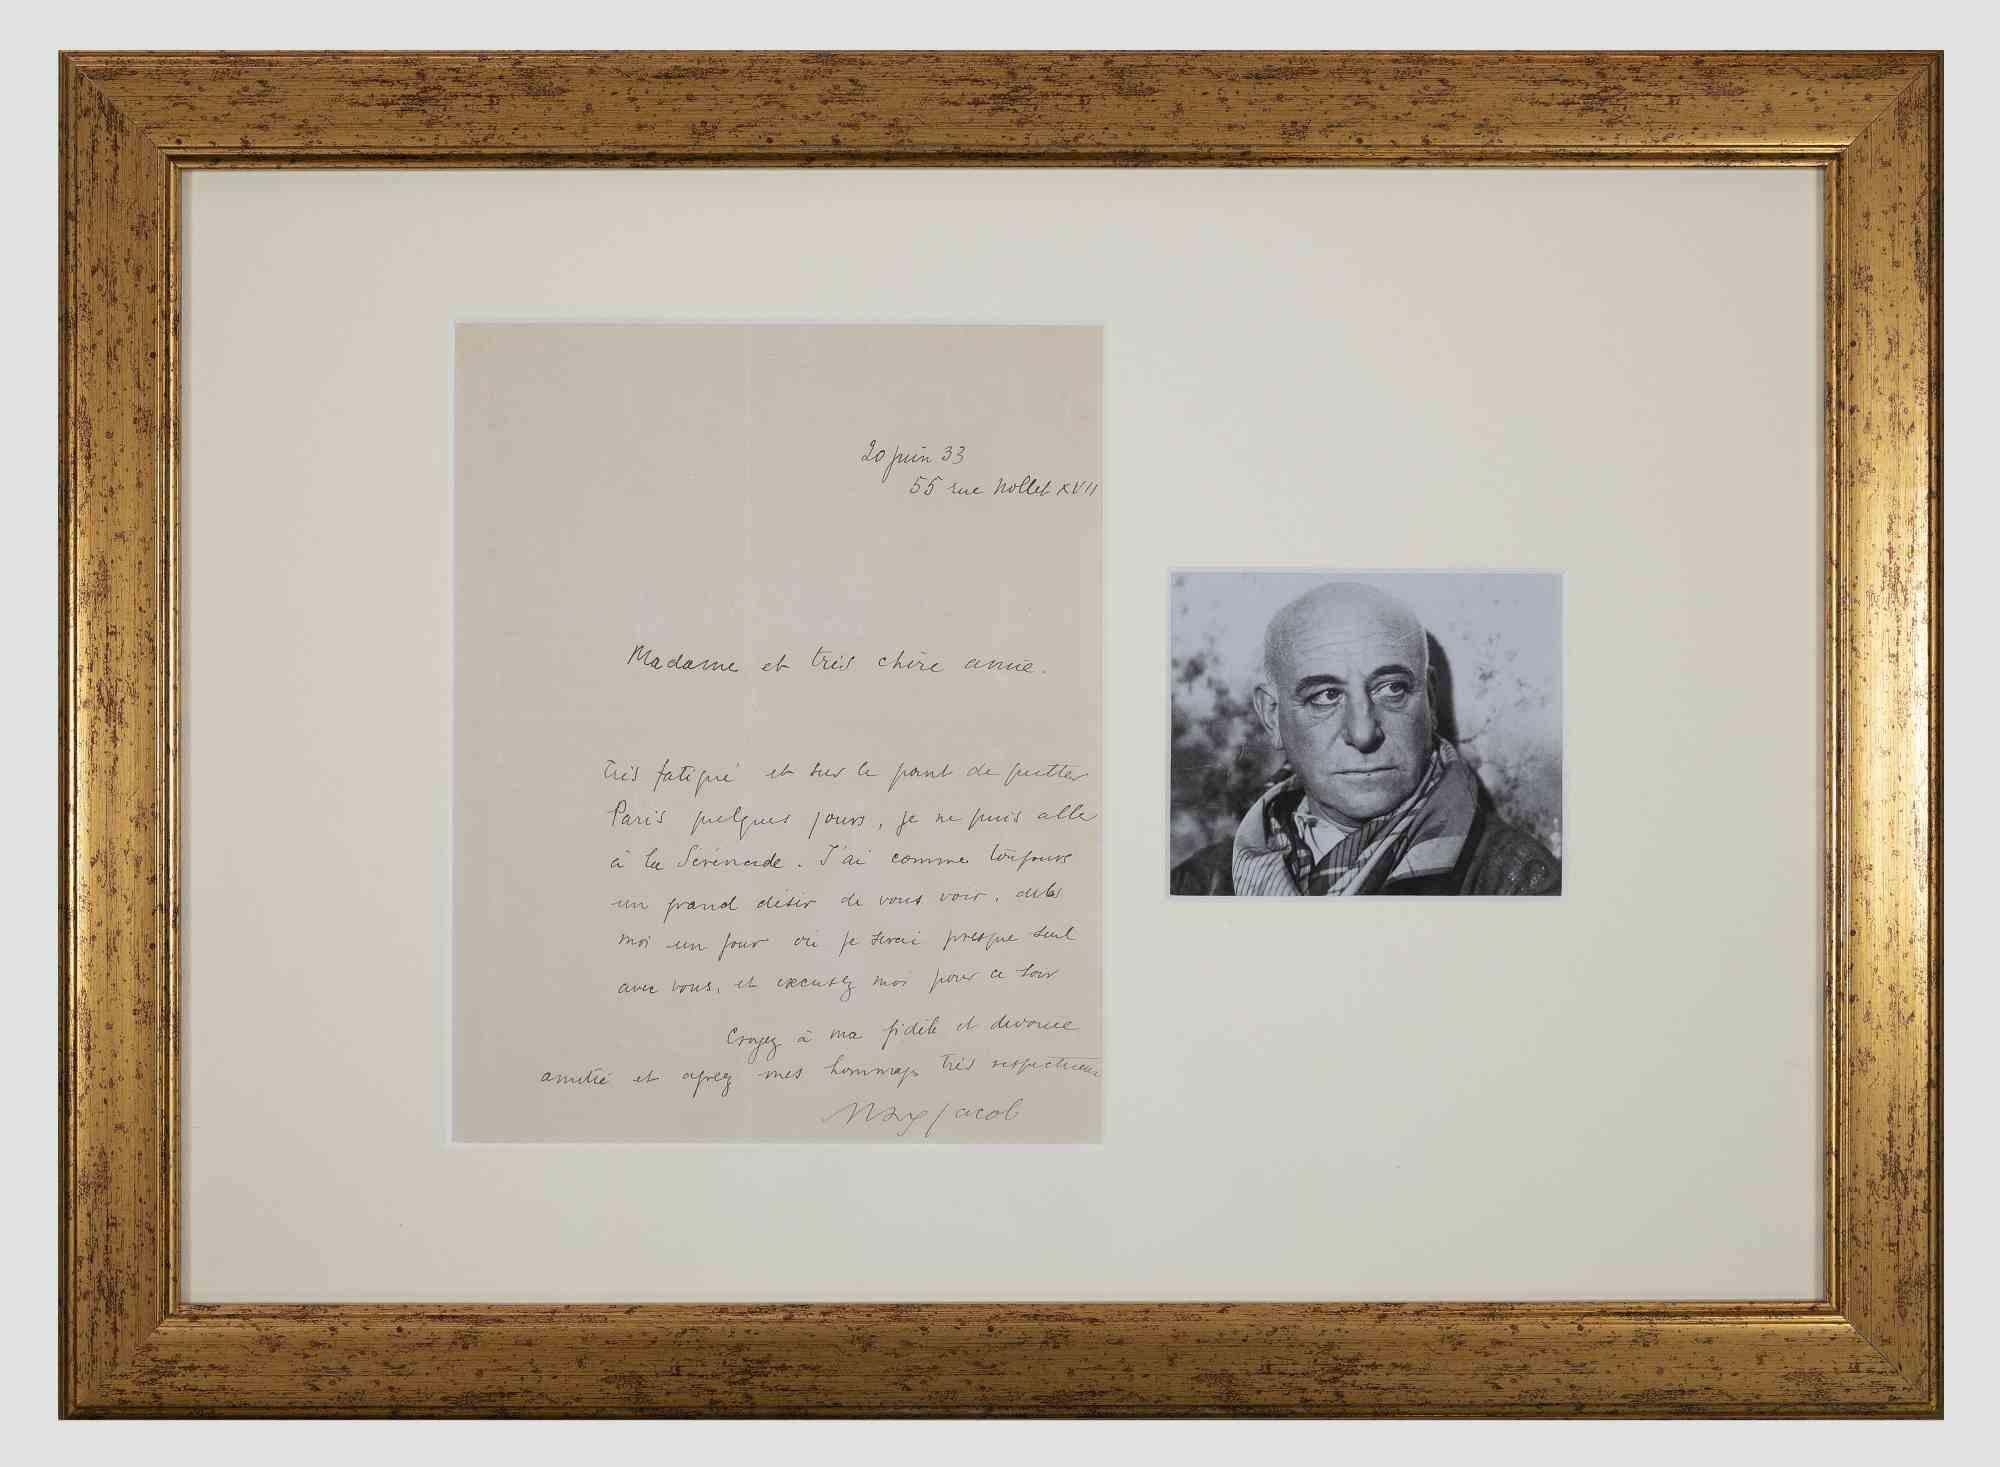 Autograph Letter Signed by Filippo de Pisis - 1947 - Art by Filippo De Pisis